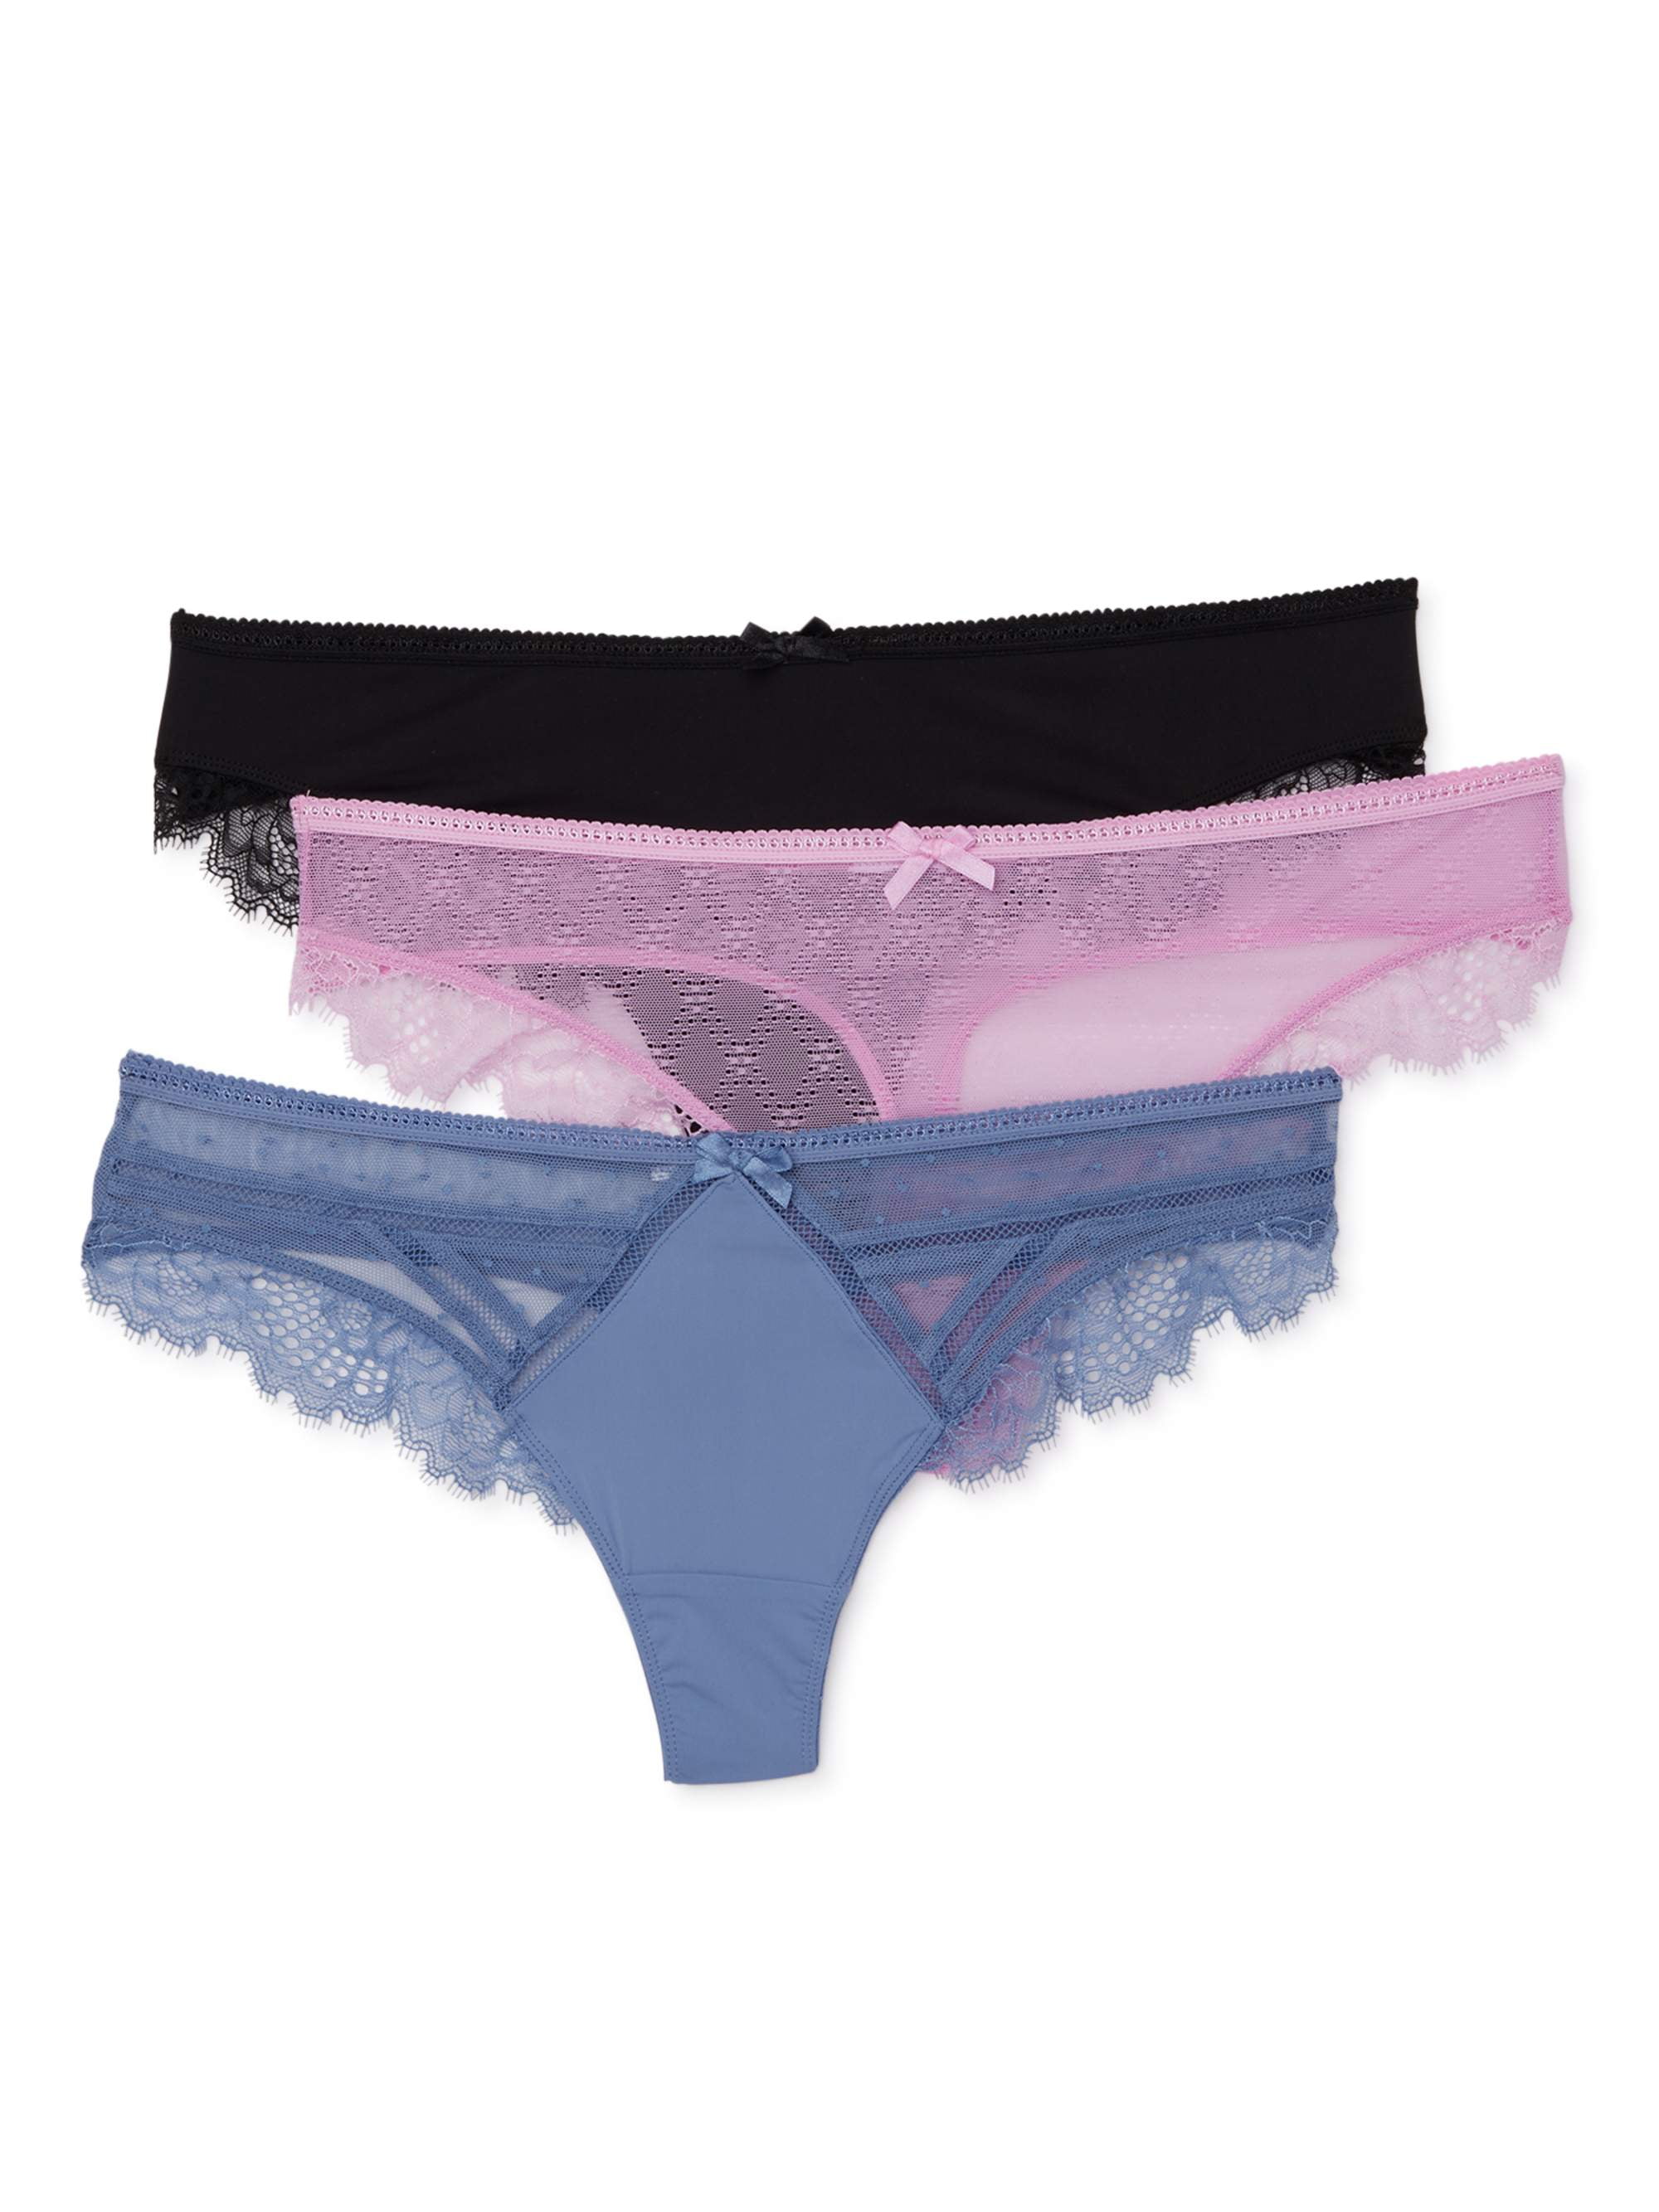 Secret Treasures Women's Dot Mesh Lace Thong Panties, 3-Pack